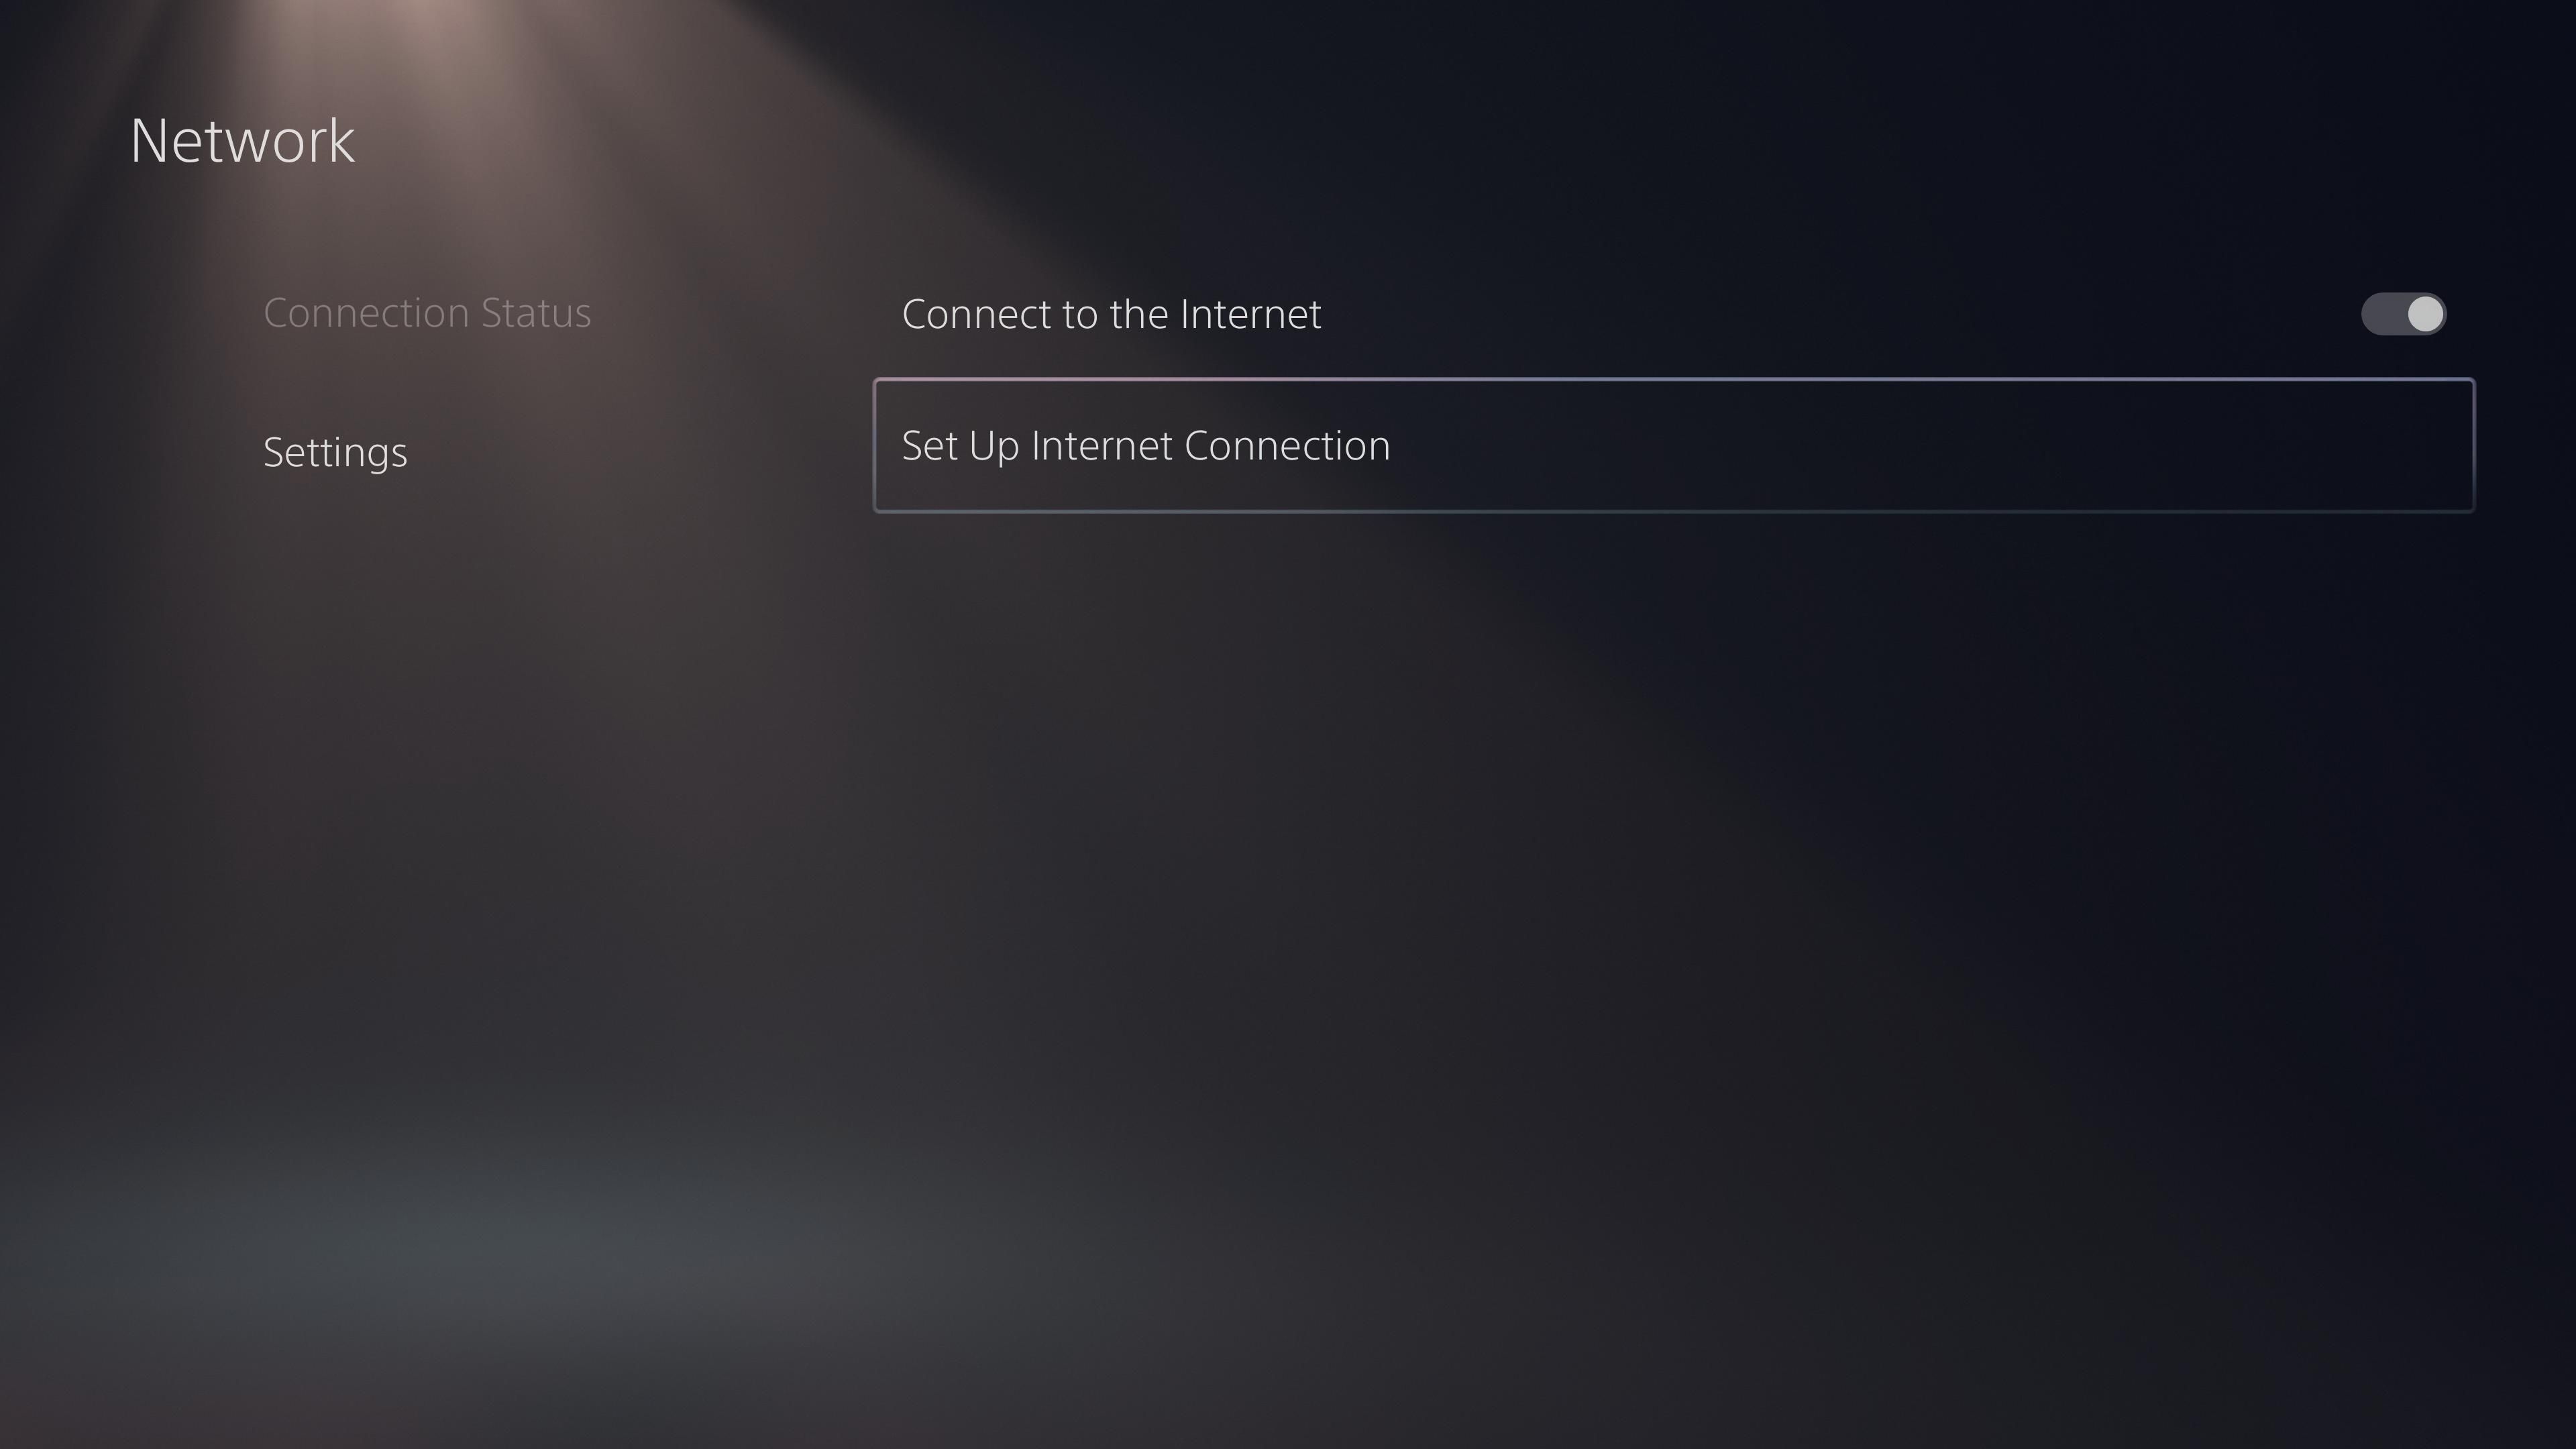 01 PS5 Set Up Internet Connection - Come risolvere i problemi Wi-Fi di PS5: una guida alla risoluzione dei problemi